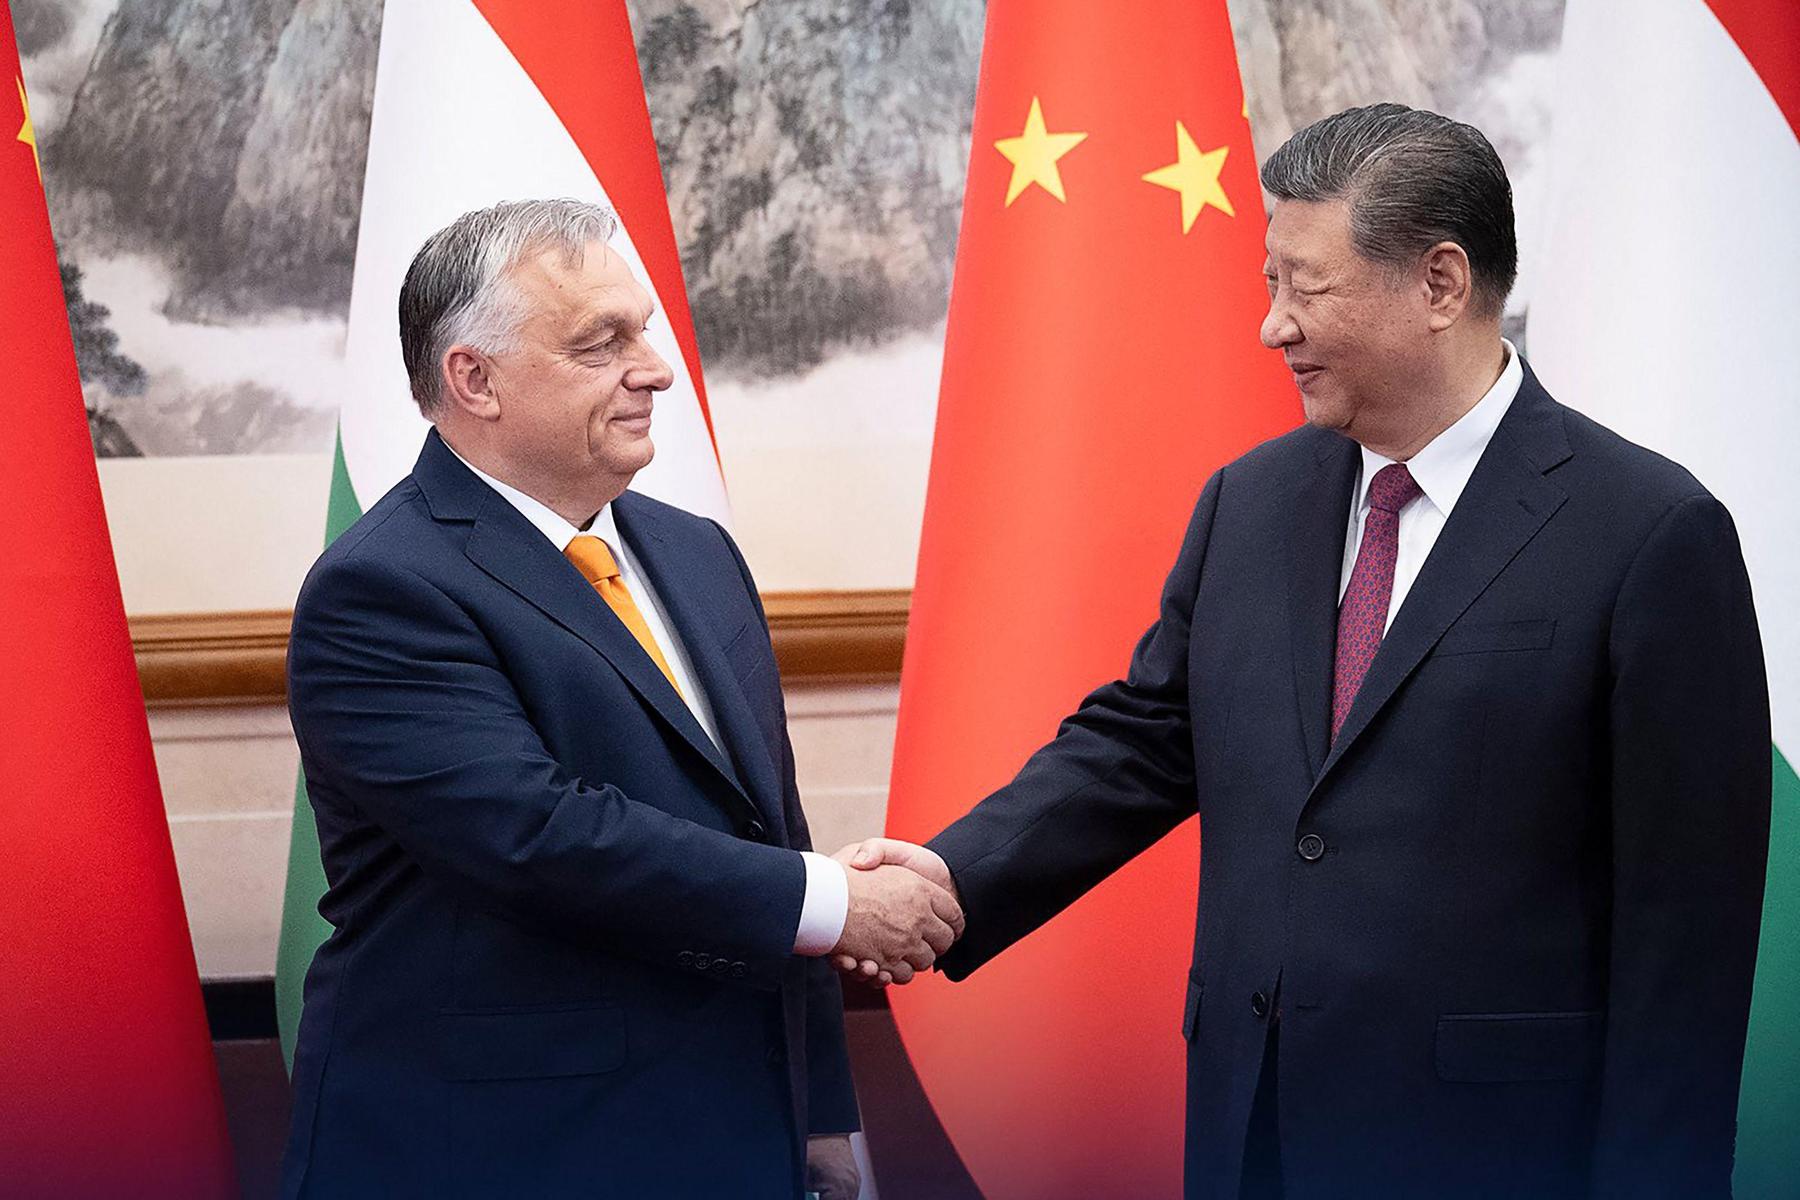 Viktor Orbán auf „Friedensmission“ in Peking: Gespräche mit Xi